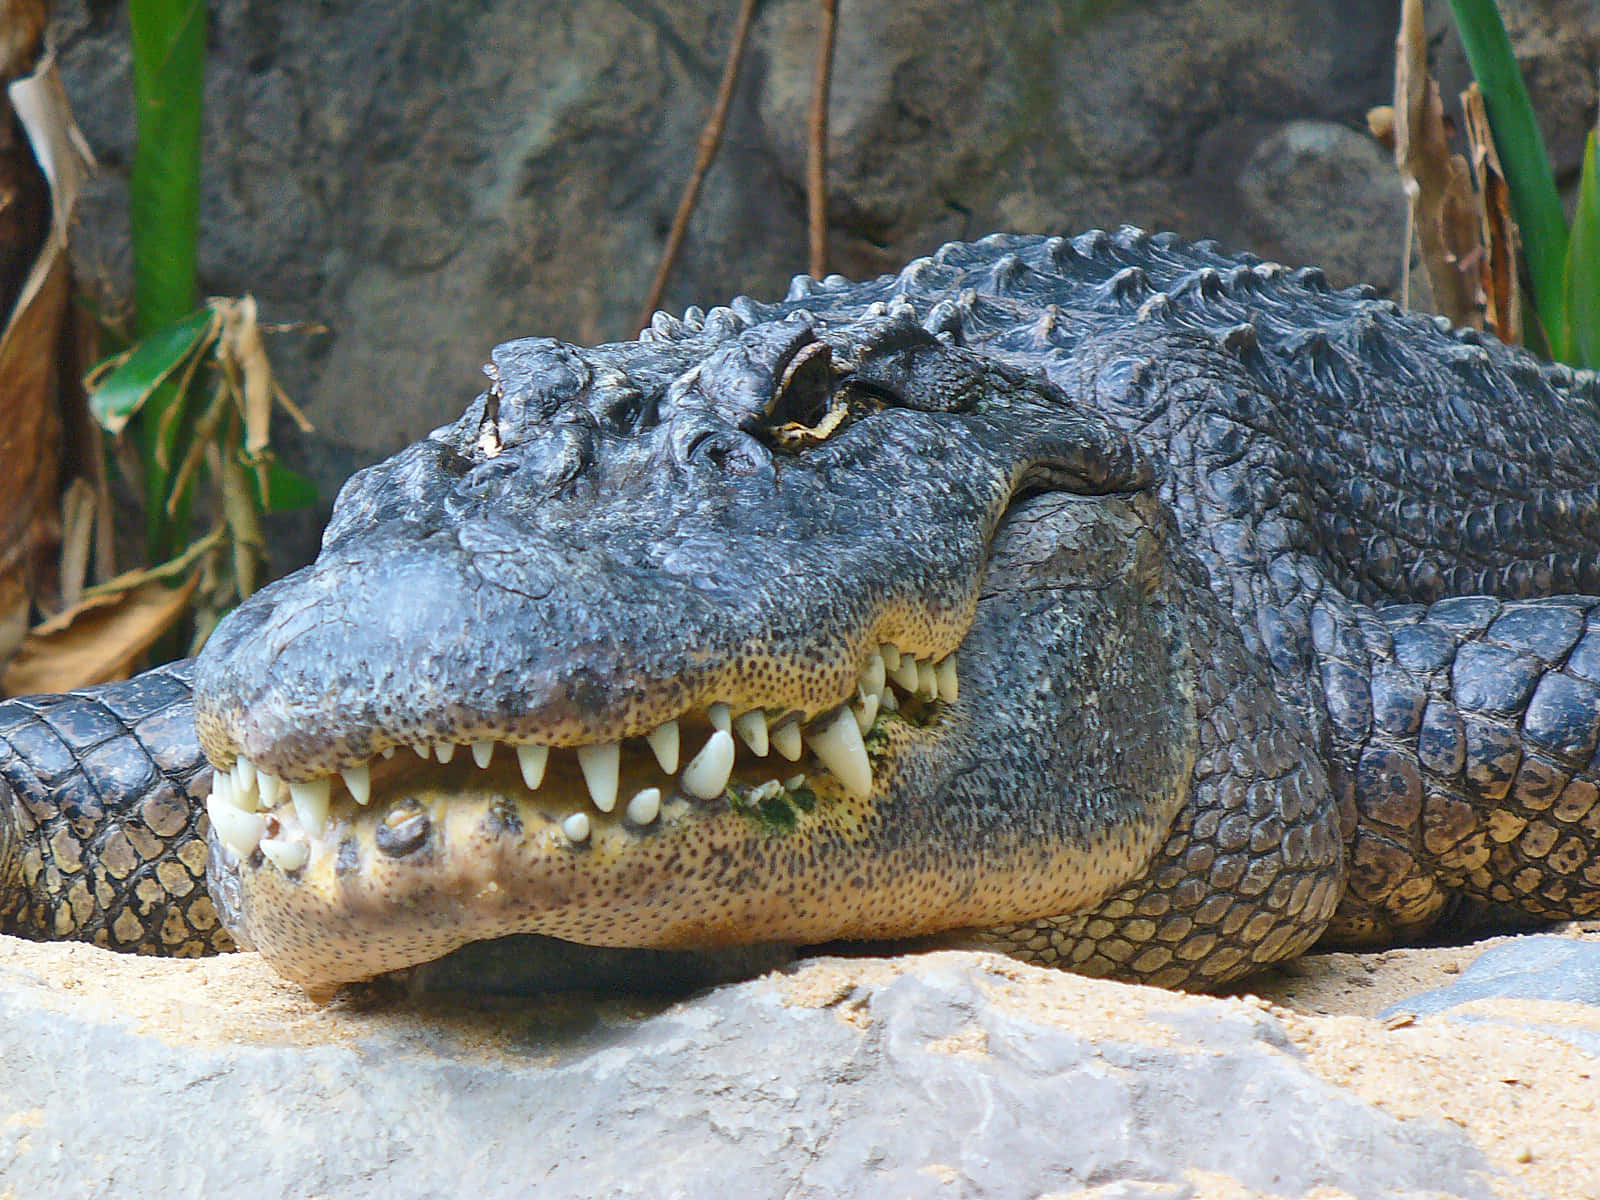 An Alligator basking in the sun